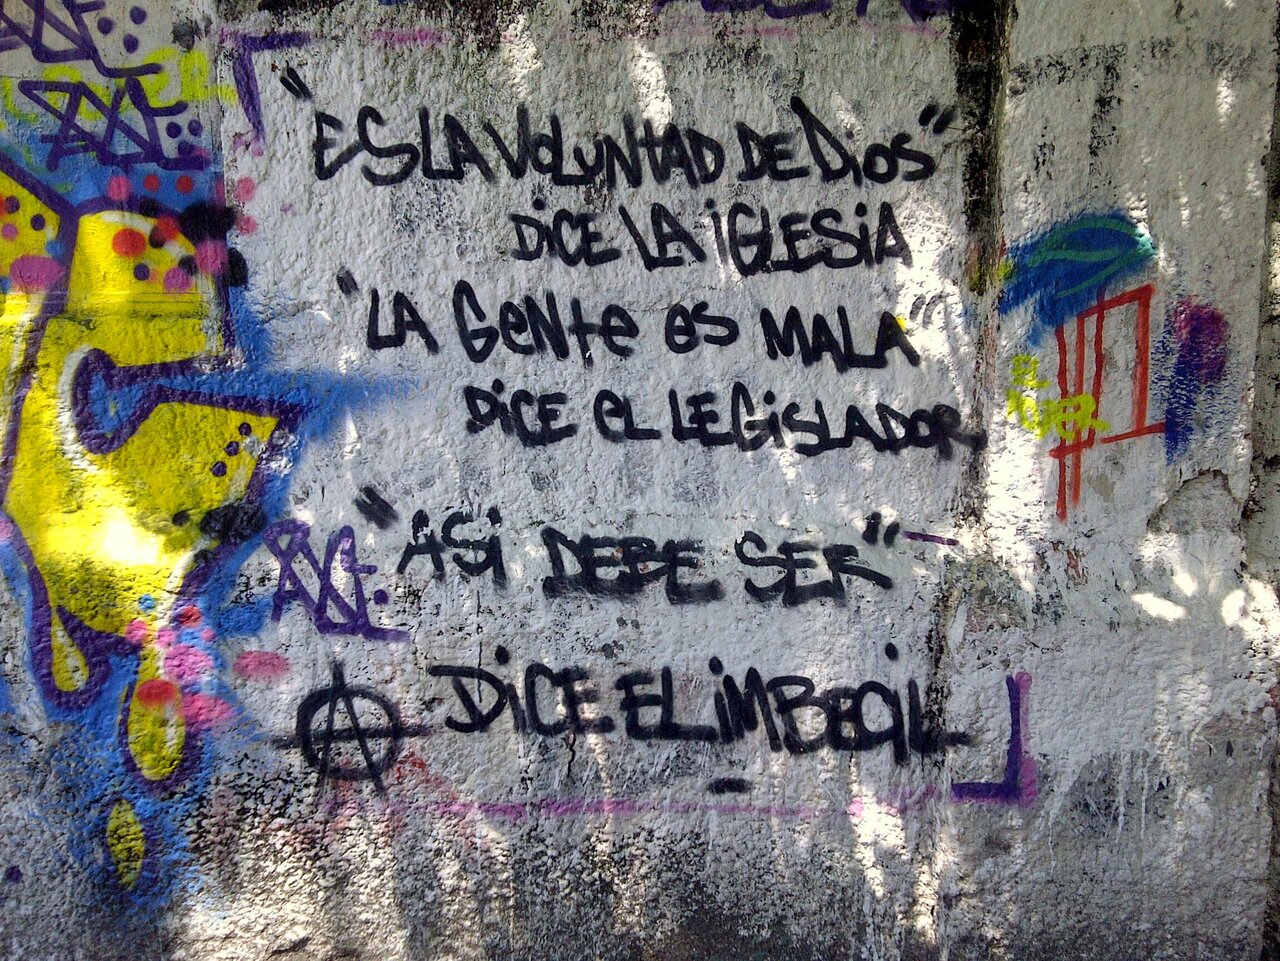 RT @DickieRandrup: #Graffiti de hoy: «Es la voluntad de Dios, dice la Iglesia » Calles 3y45 #LaPlata #Argentina #StreetArt #UrbanArt https://t.co/0Pf2cq2QQt